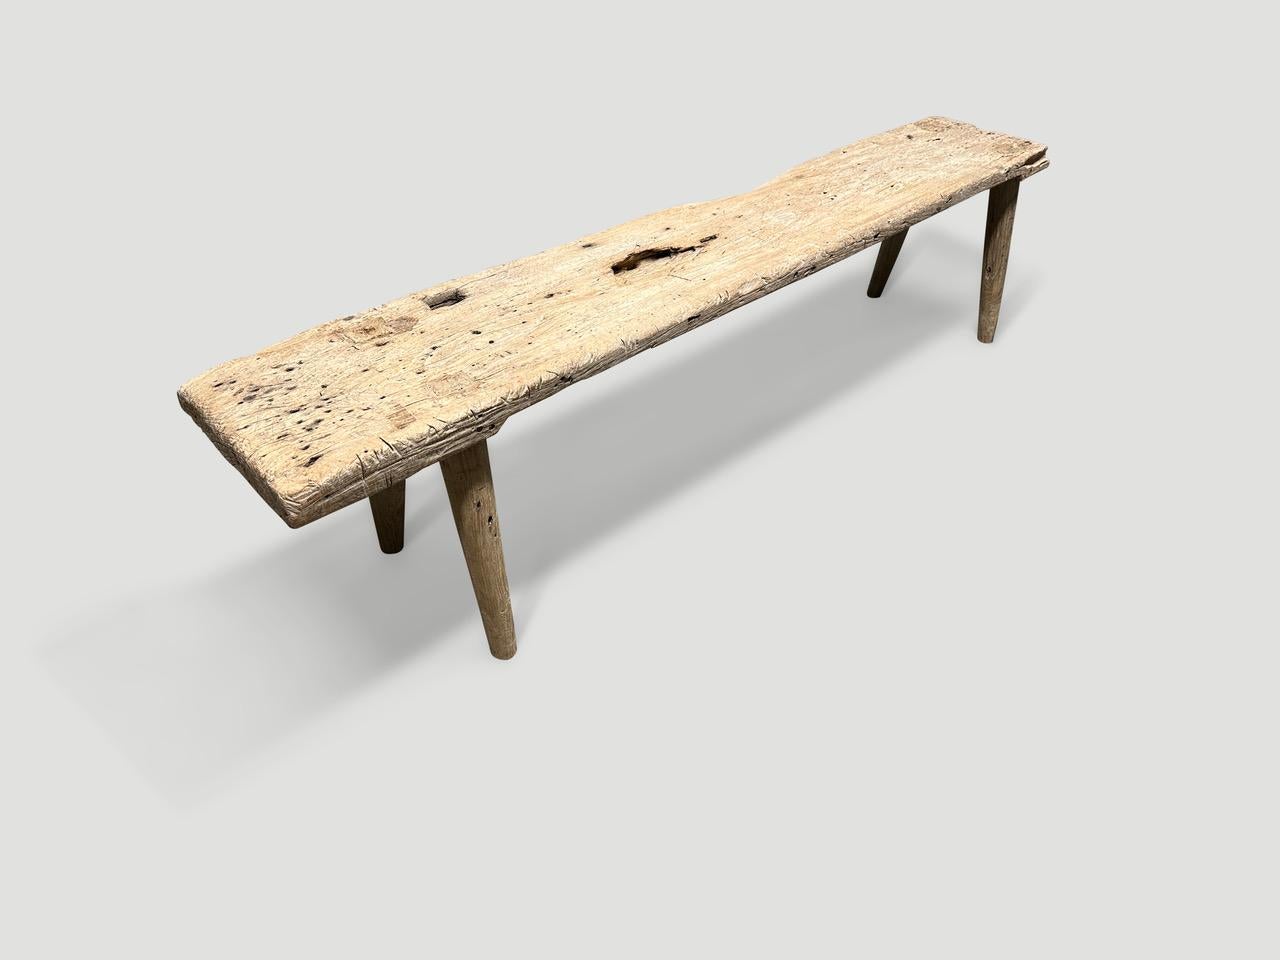 Eine einzelne dicke antike Holzplatte mit schönem Charakter. Wir haben glatte, minimalistische Teakholzbeine hinzugefügt, um diese schöne Bank herzustellen, und sie mit einer geheimen Zutat behandelt, die die einzigartige Holzmaserung zum Vorschein